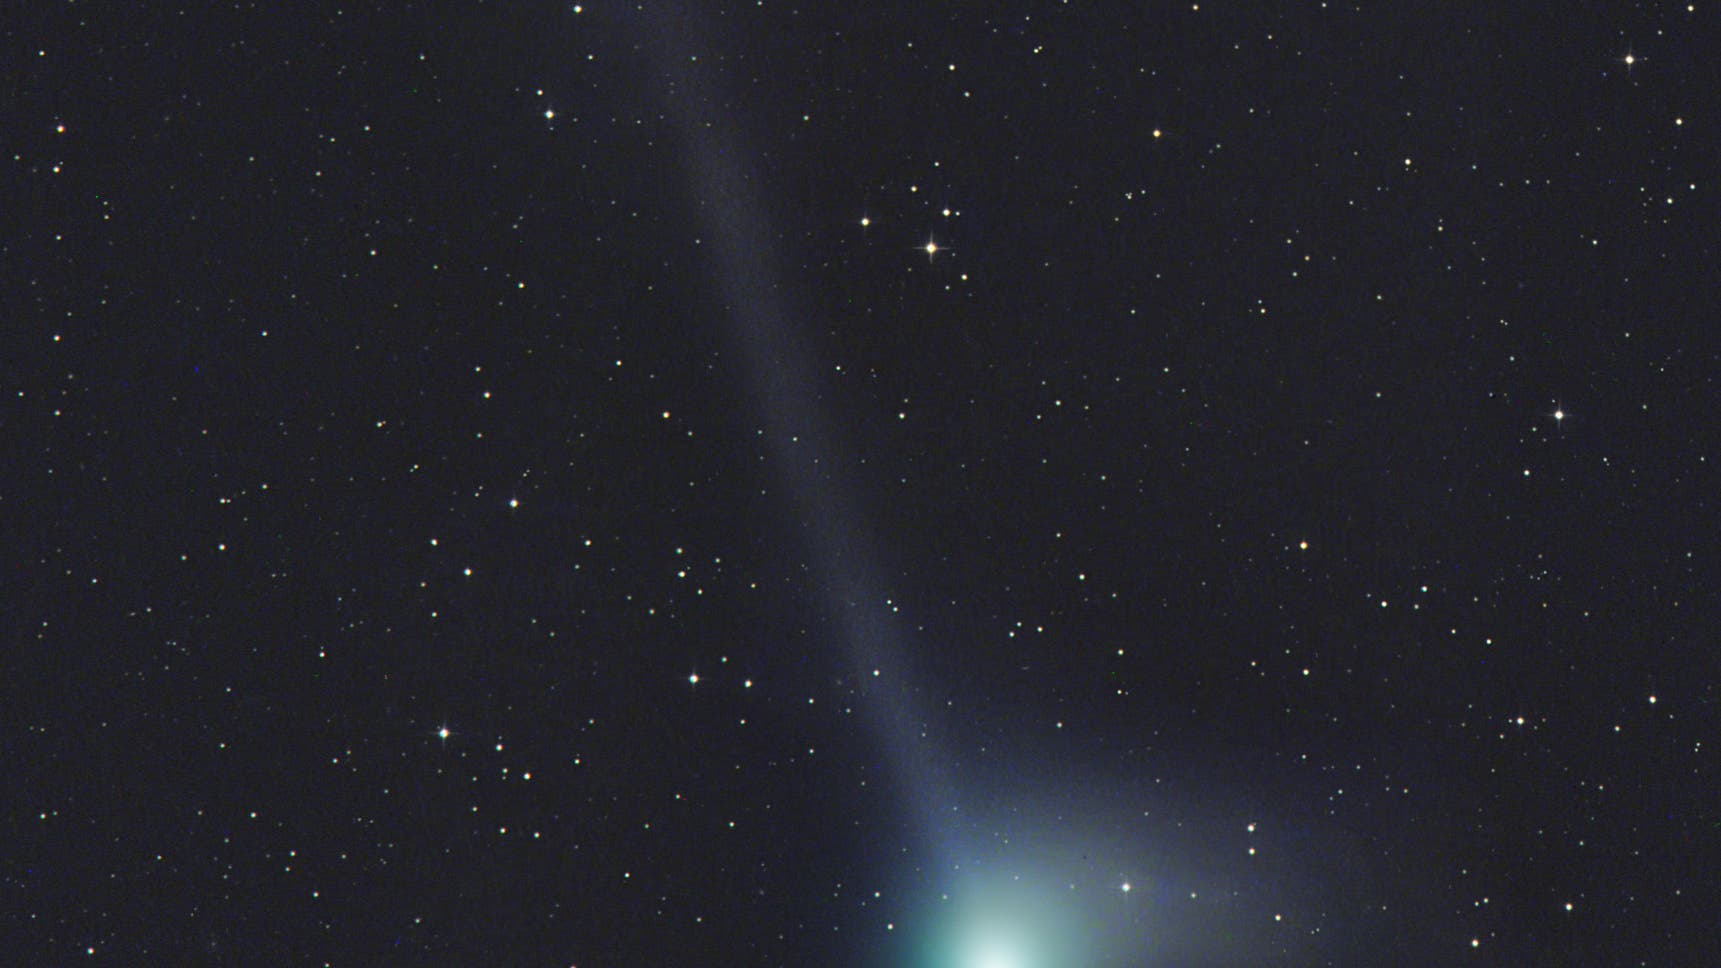 Komet Catalina am 8. Januar 2016 (Aufnahme von Gerald Rhemann)